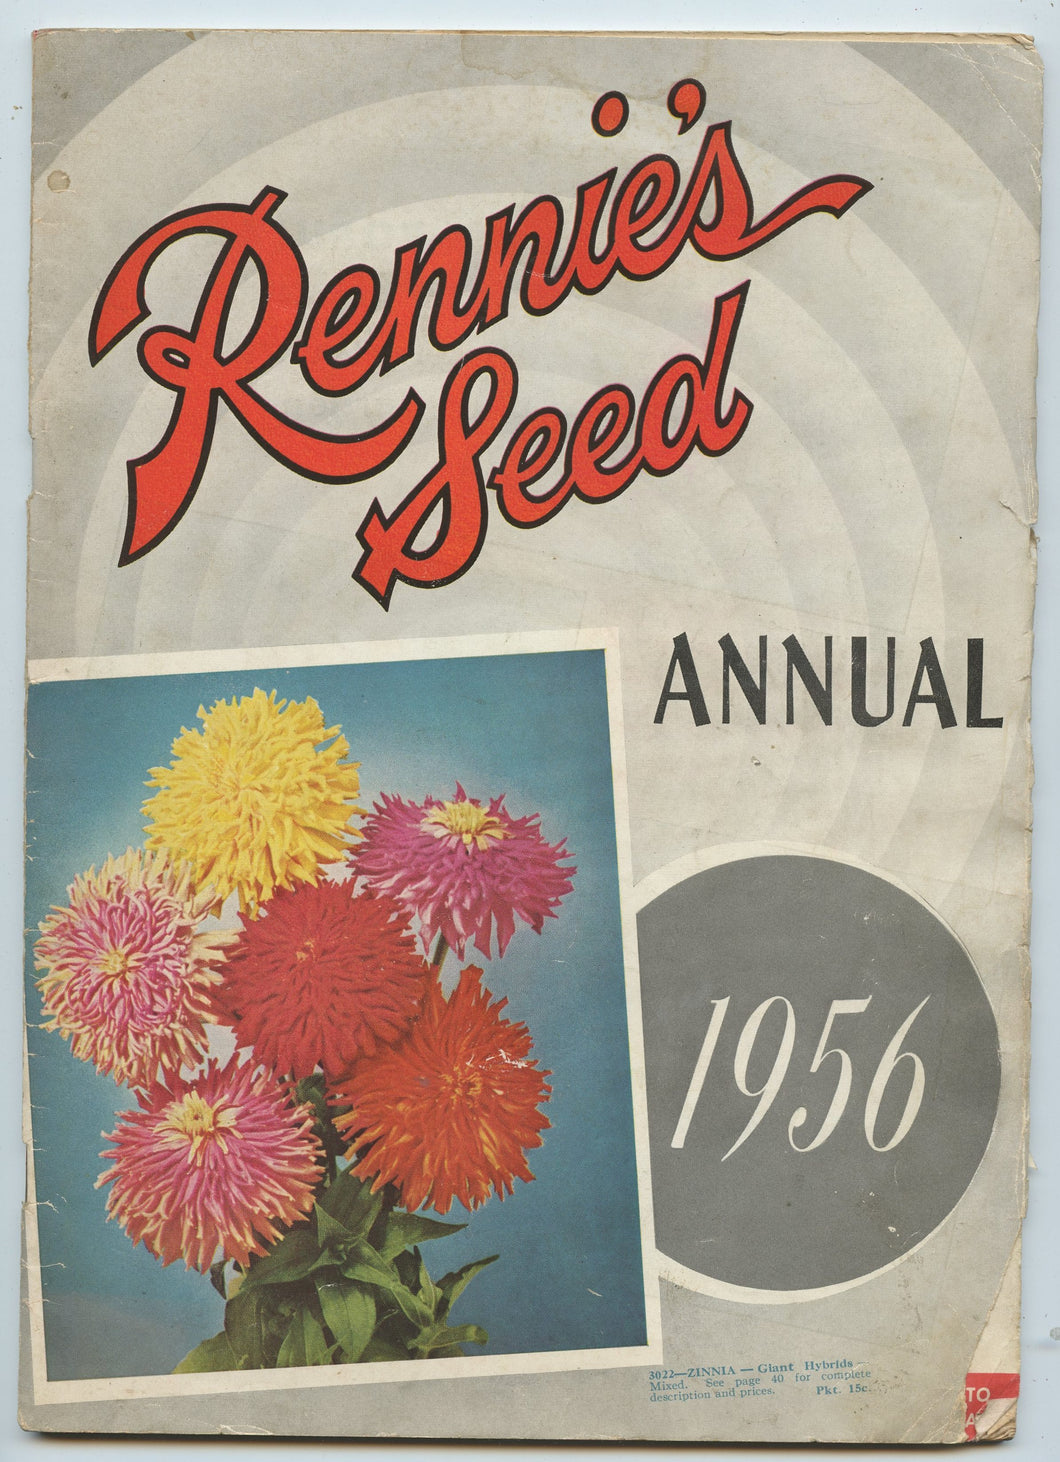 Rennie's Seed Annual 1956